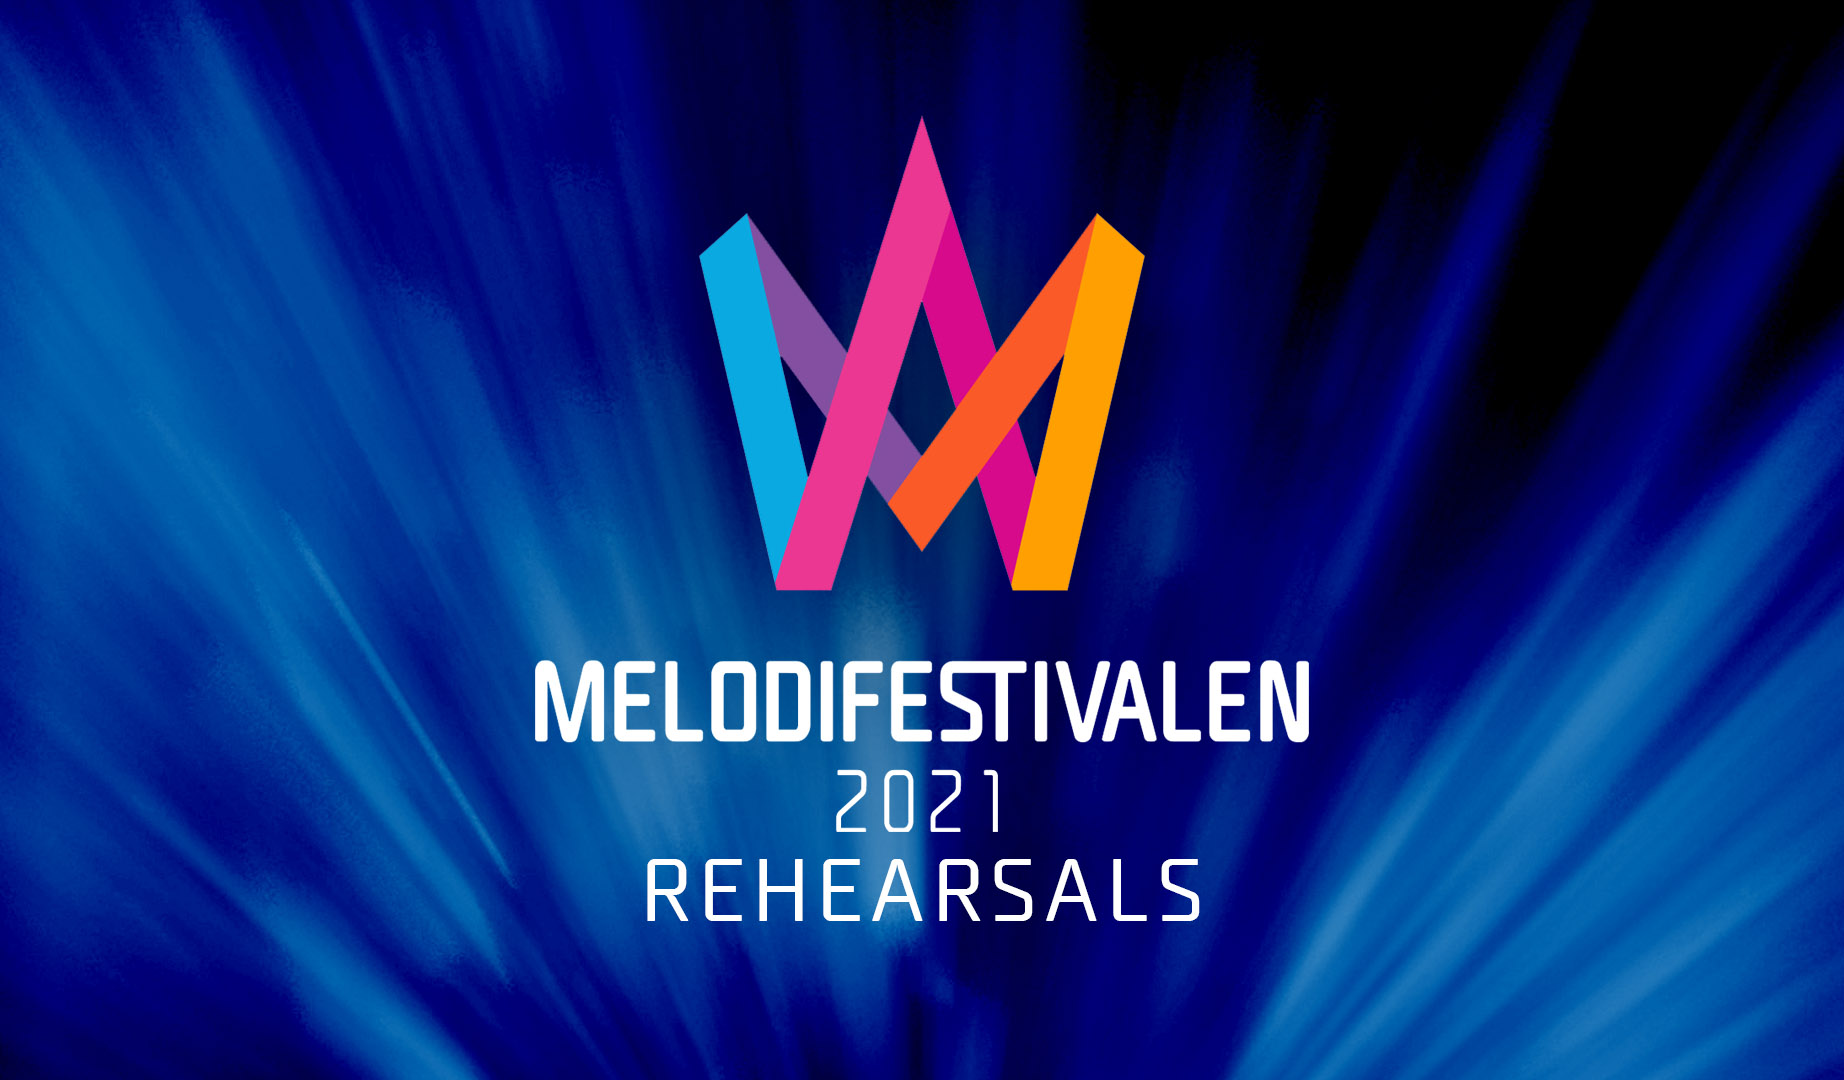 Suecia: Disponibles los ensayos de la tercera semifinal del Melodifestivalen 2021